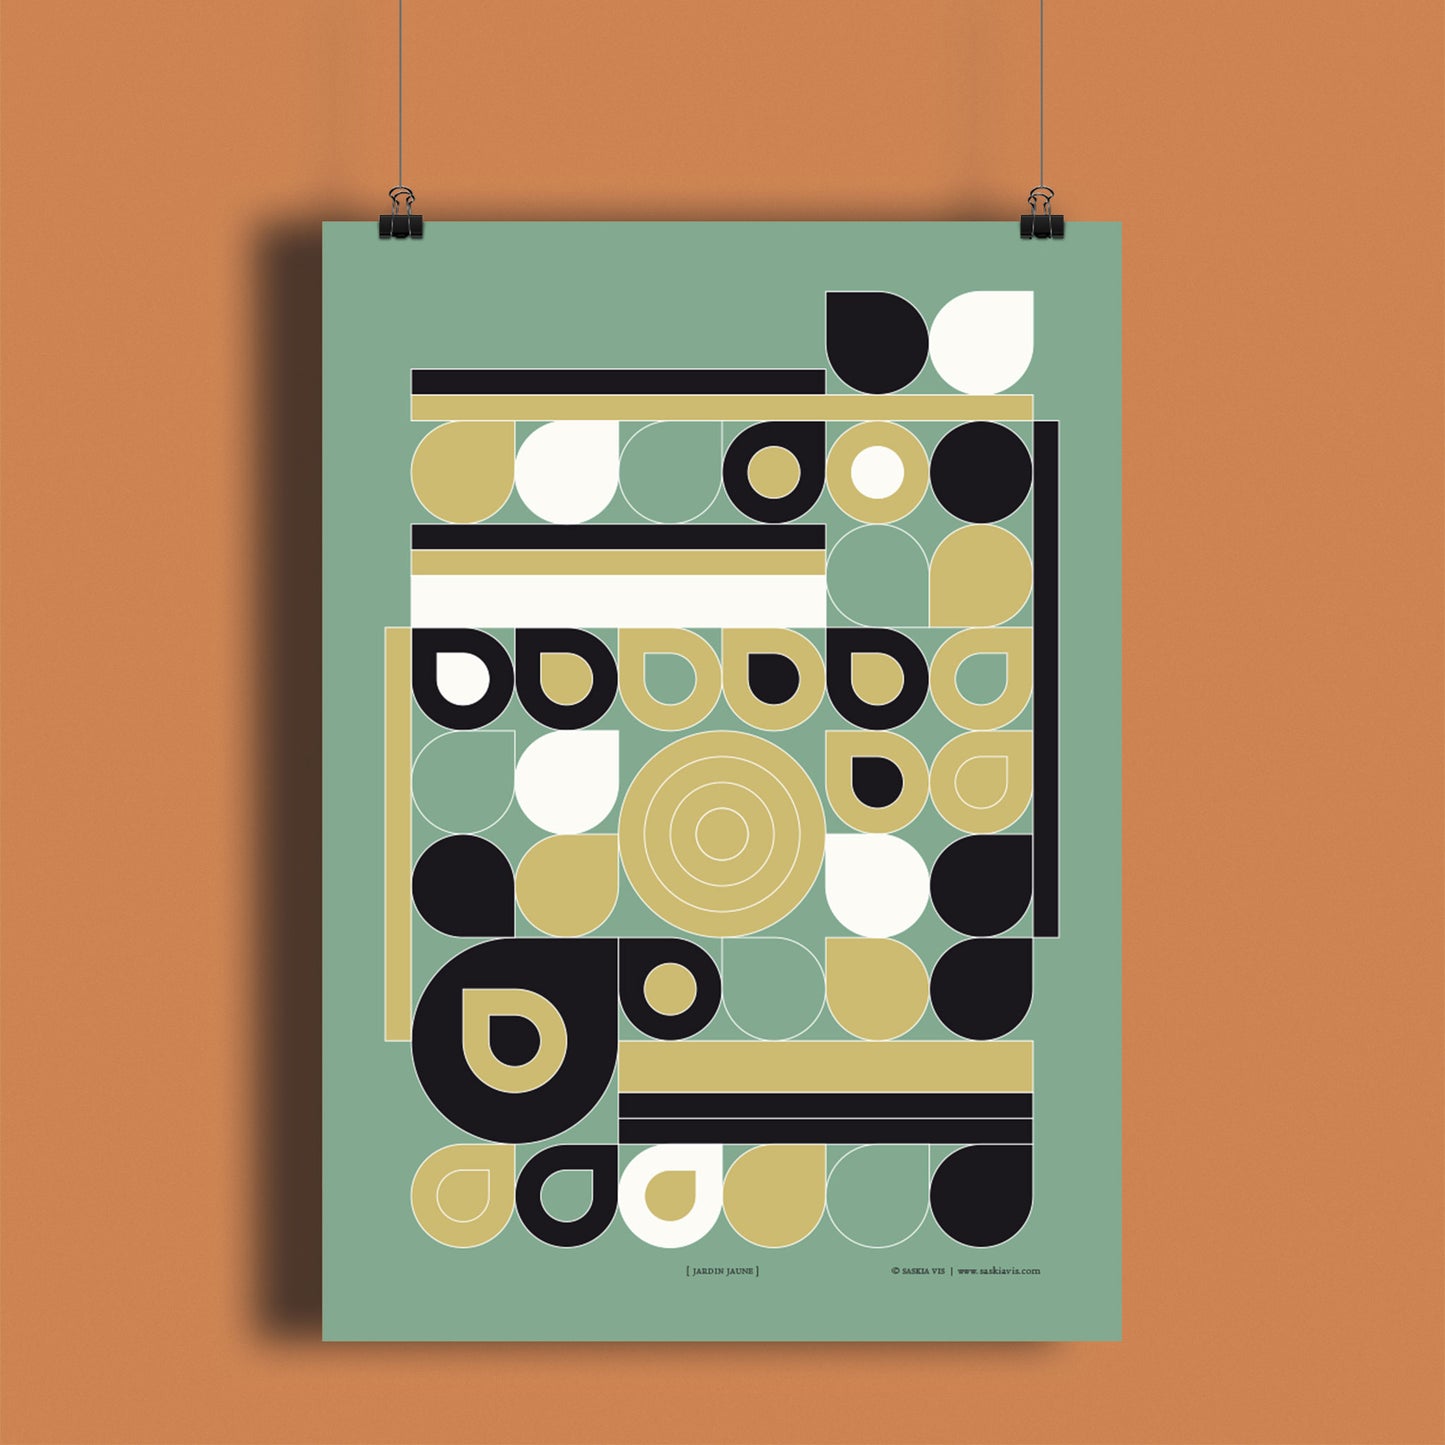 Productafbeelding, poster "jardin jaune", hangend aan een warm oranje/bruin gekleurde wand, een overzichtsfoto